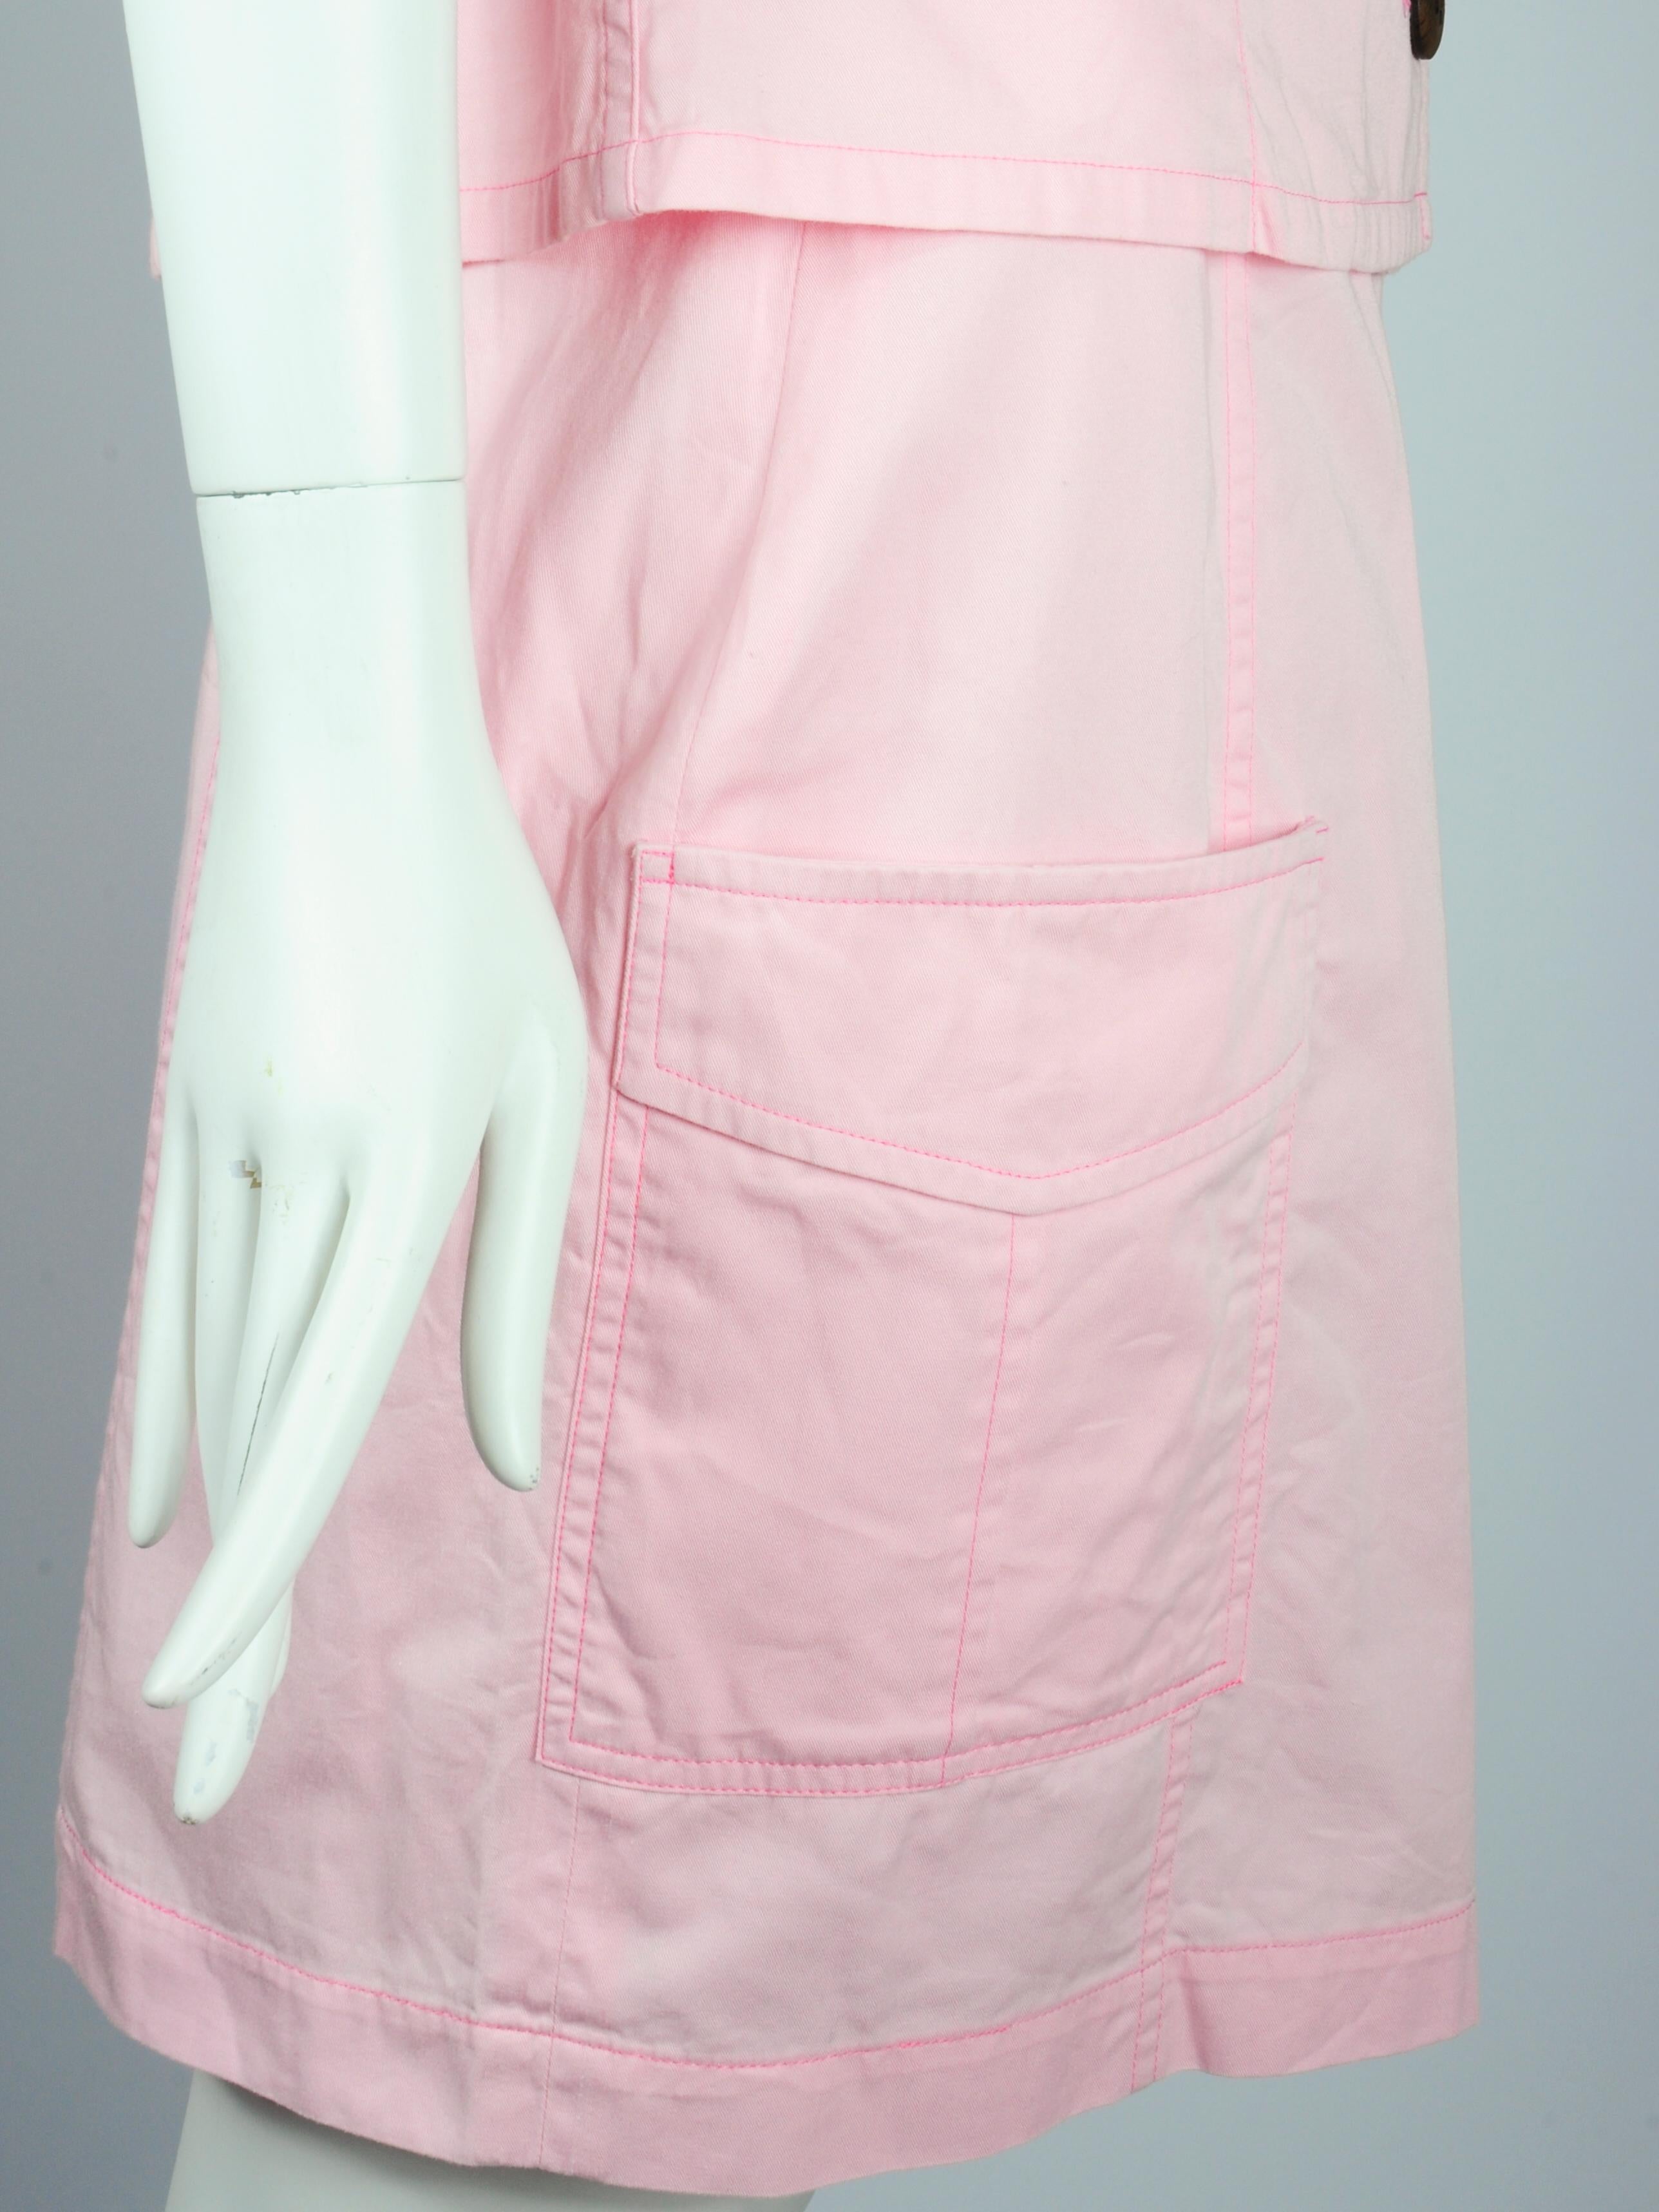 Yves Saint Laurent Saharienne Safari Two Piece Skirt Suit Set Pink Pockets 1990s For Sale 8